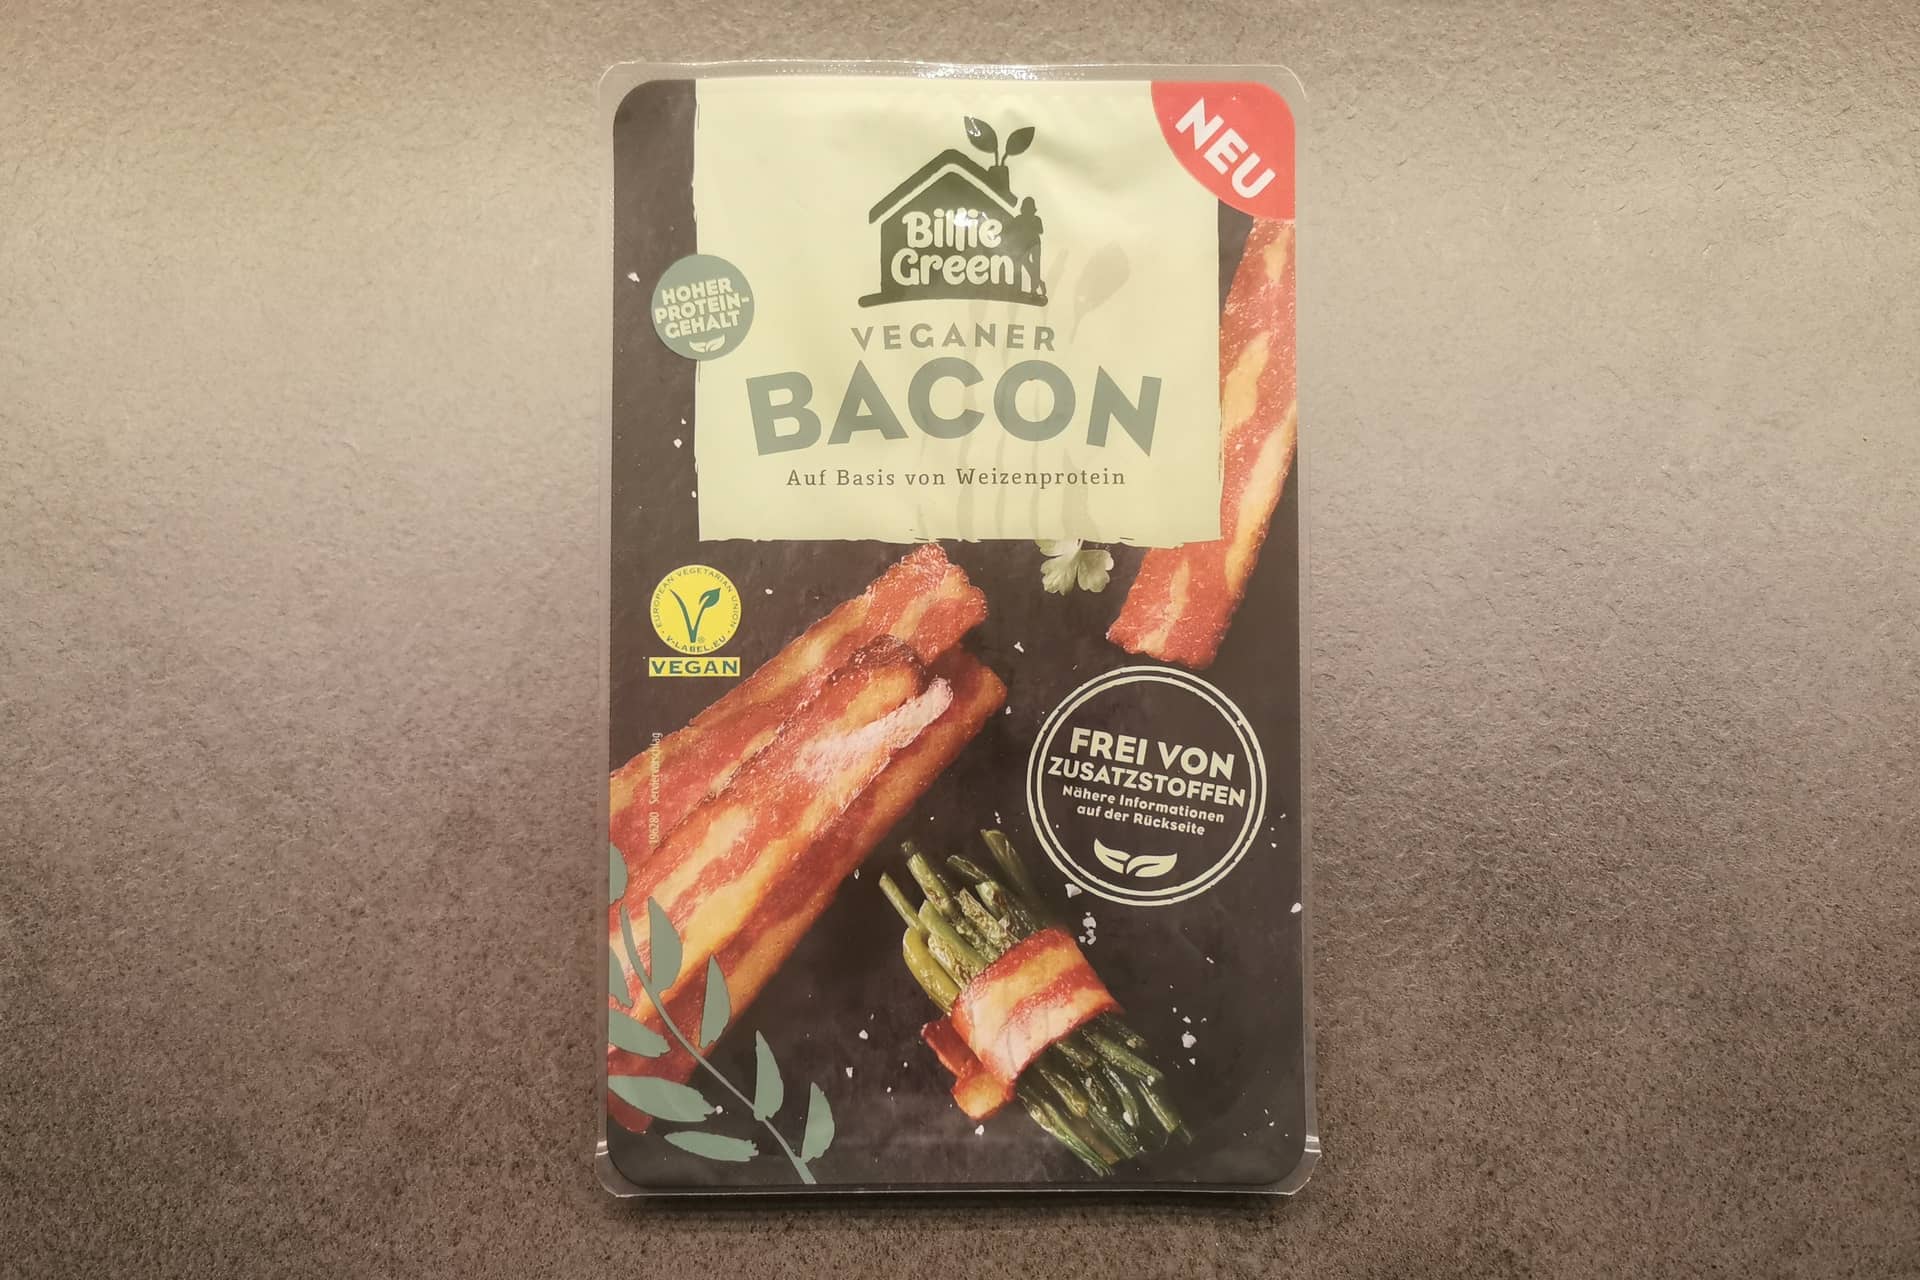 Billie Green Veganer Bacon | Fleischersatz-Produkte.de